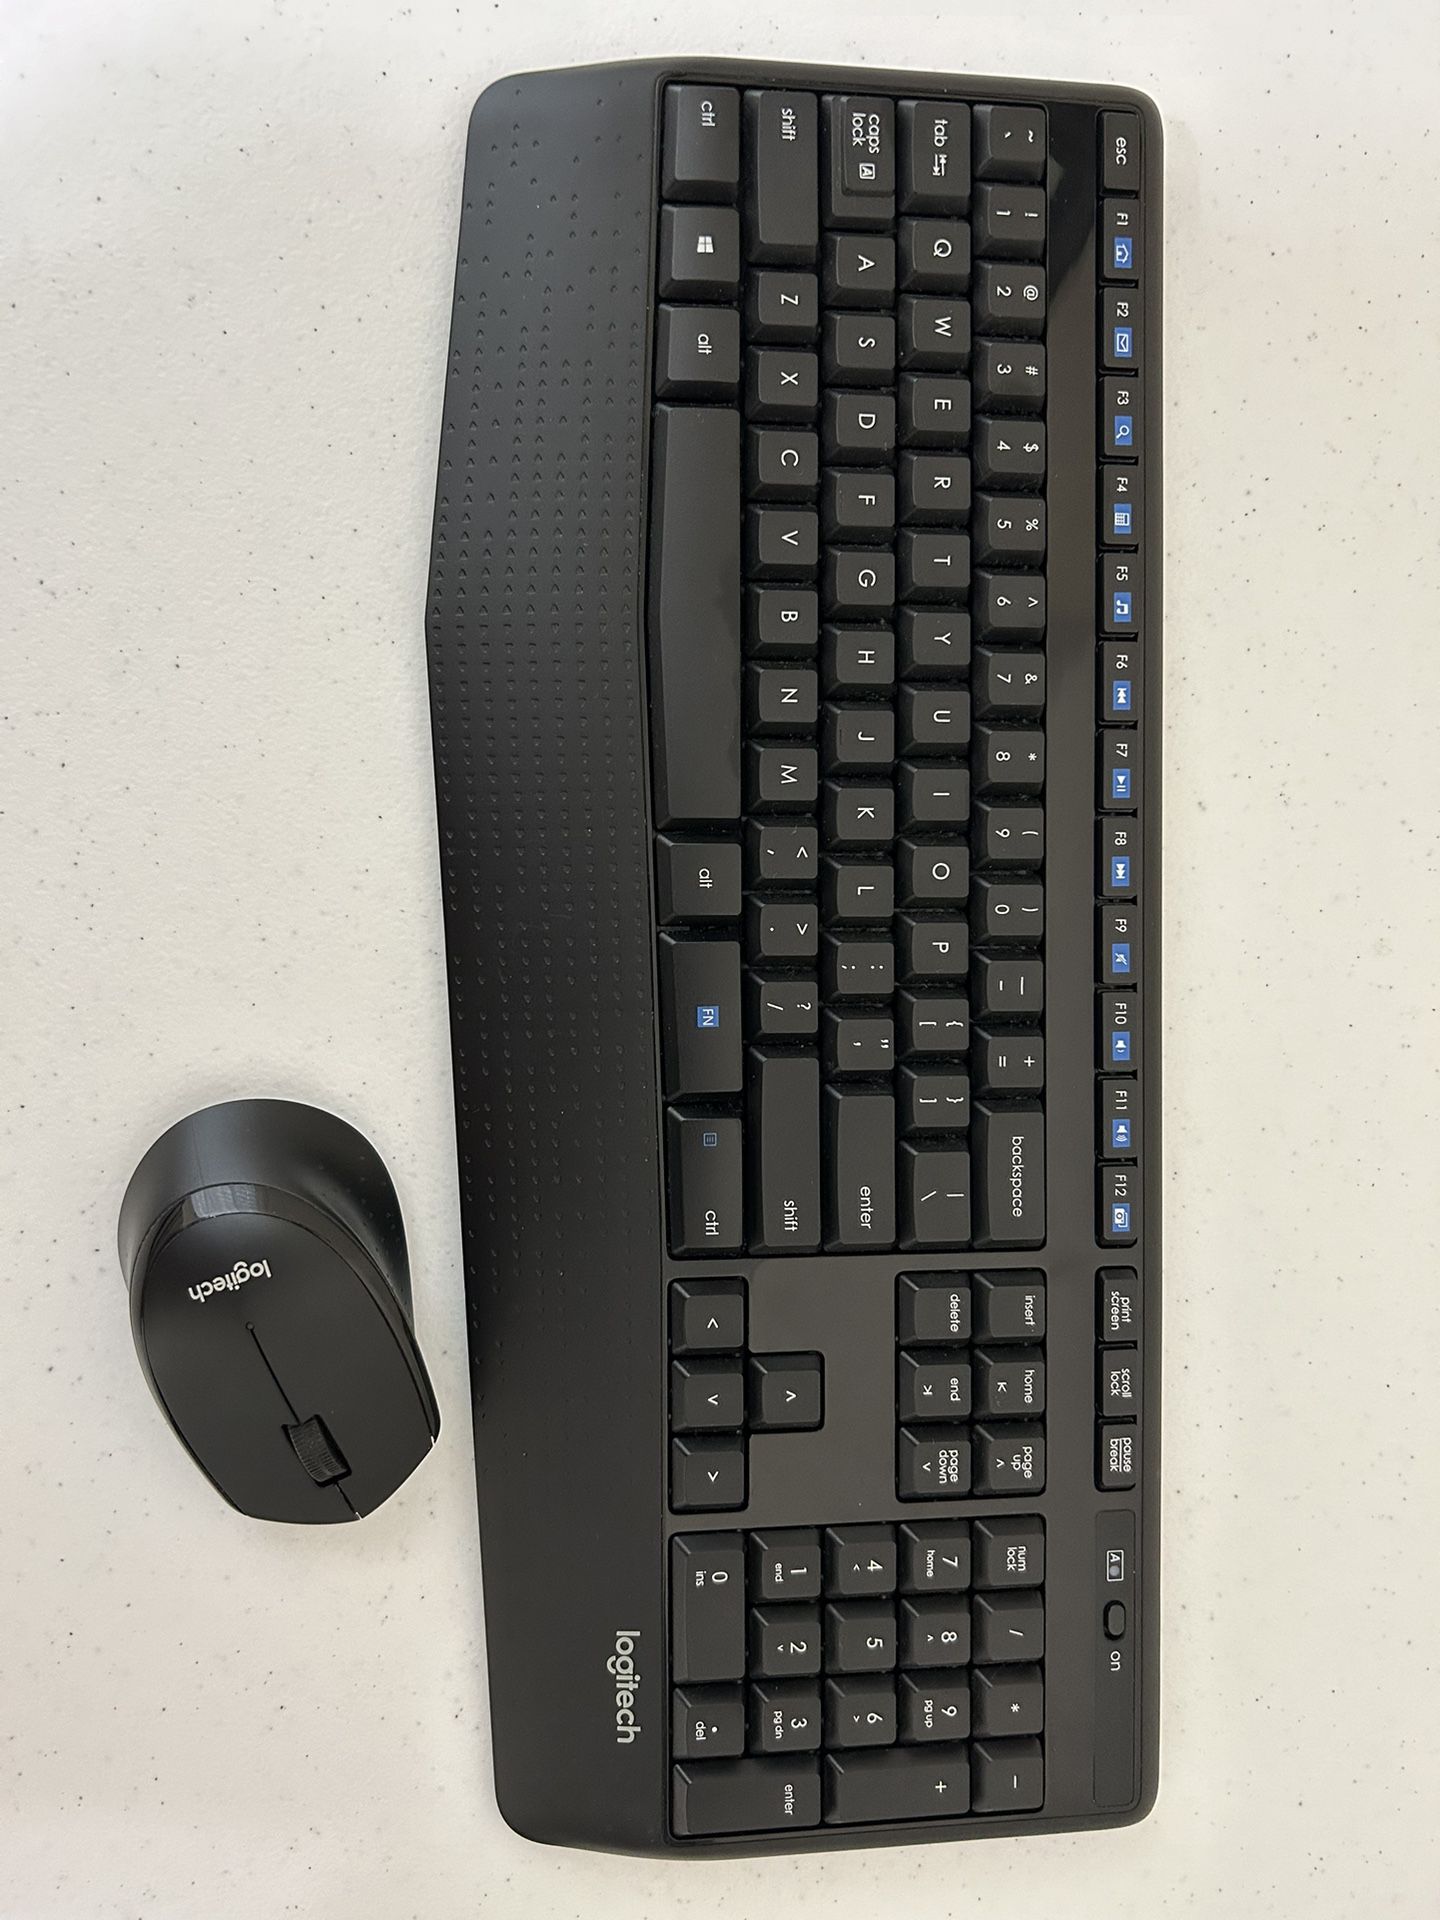 Logitech Wireless Keyboard mouse